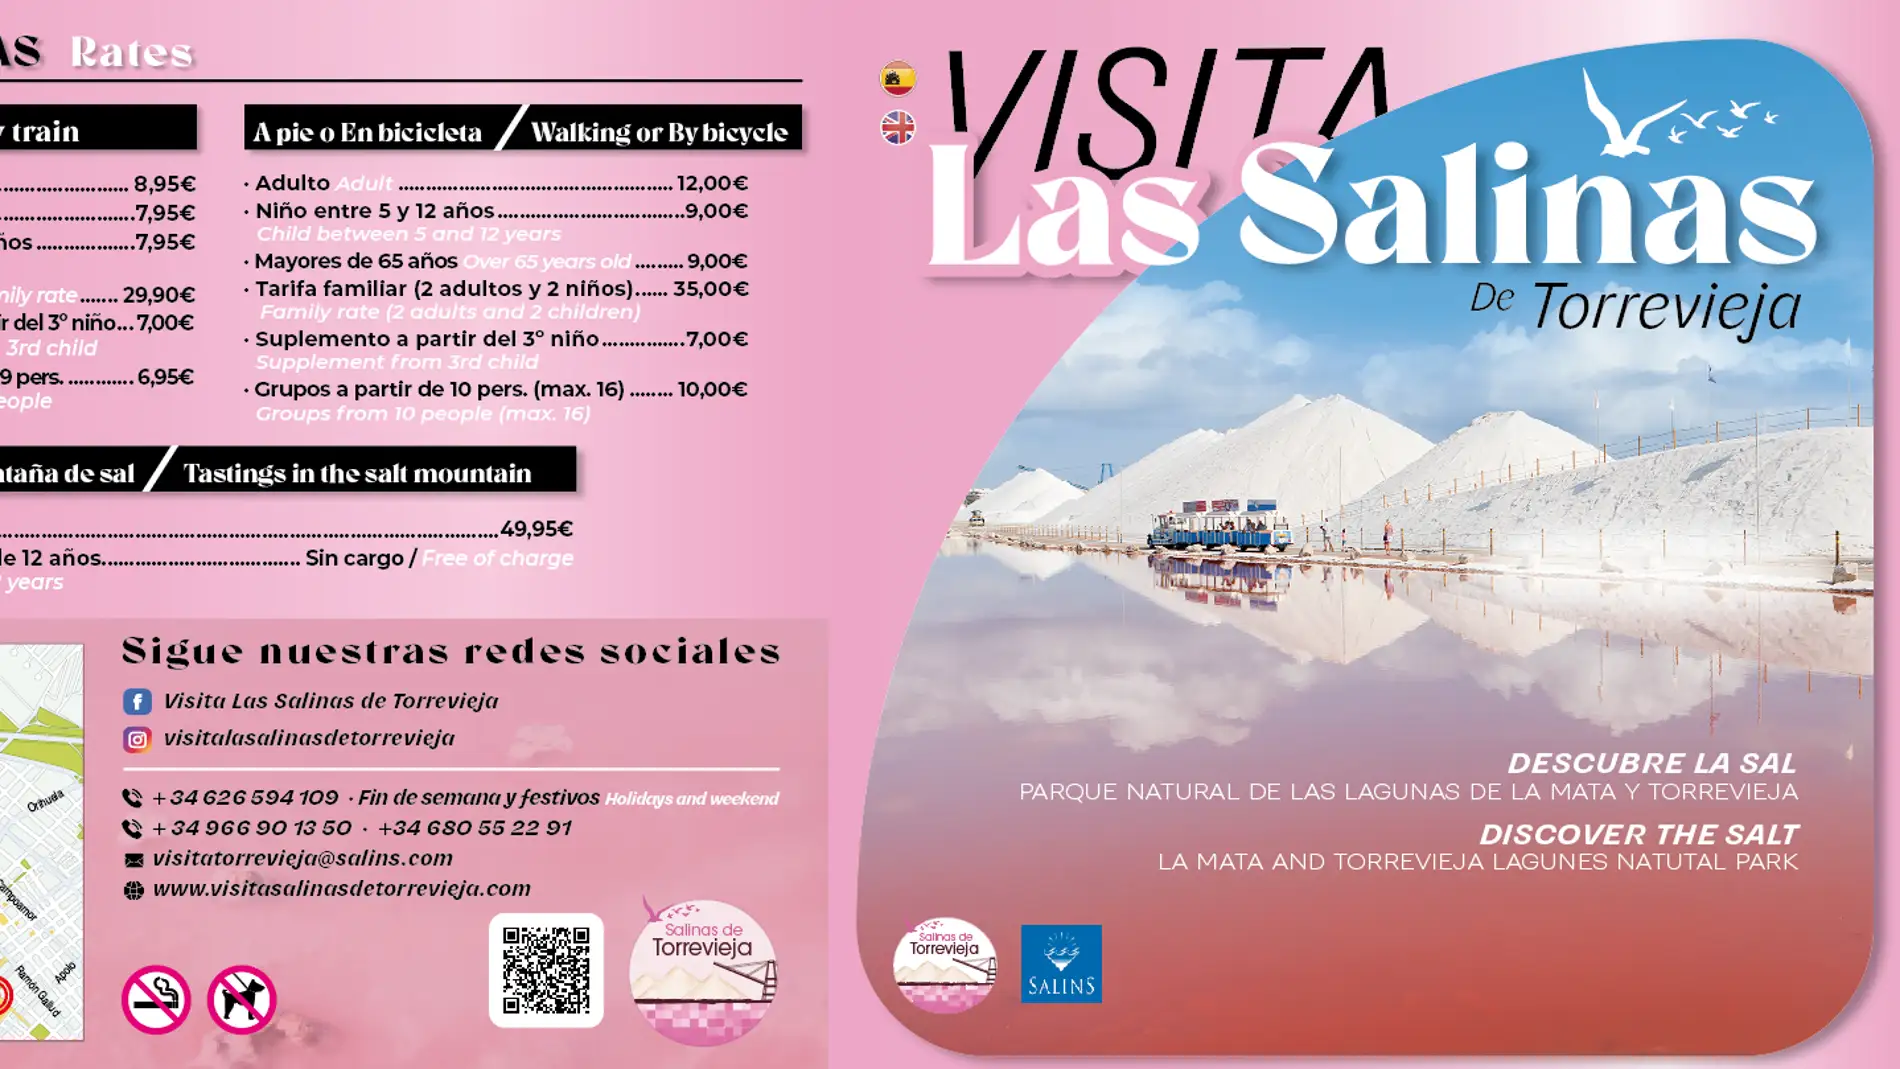 Nueva iniciativa turística, rutas guiadas a pie o en bicicleta por las salinas de Torrevieja    